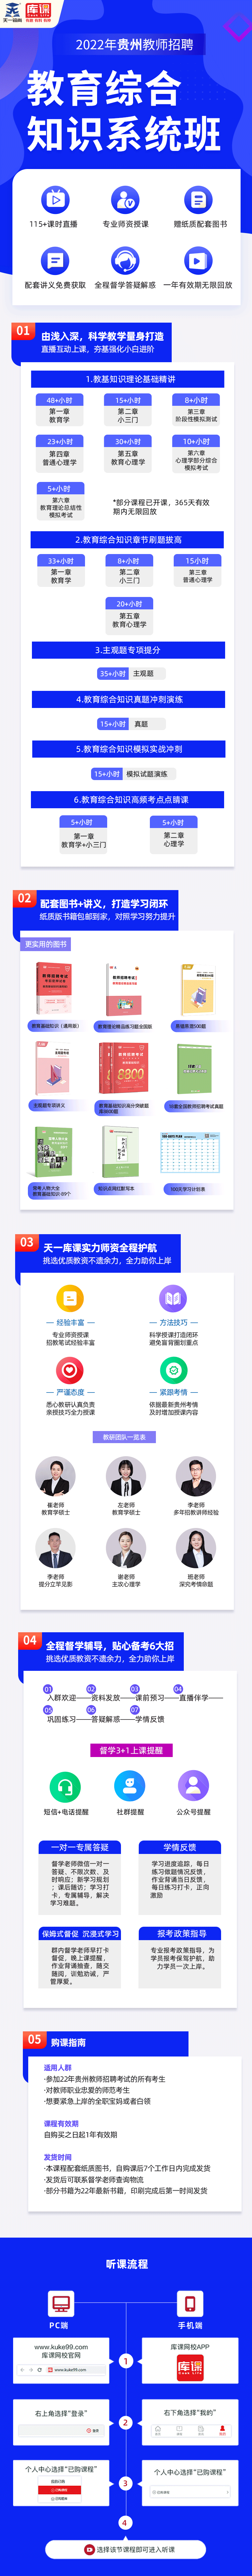 各省份教综系统班详情页-贵州.png